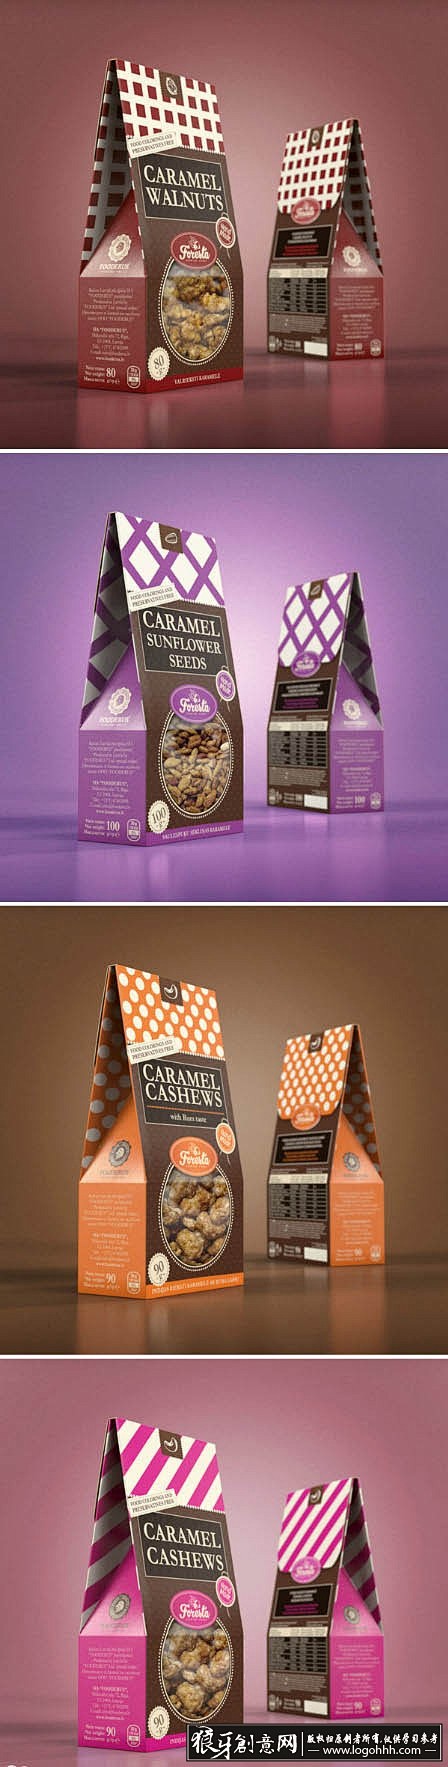 包装设计灵感 创意零食小食品包装设计灵感...